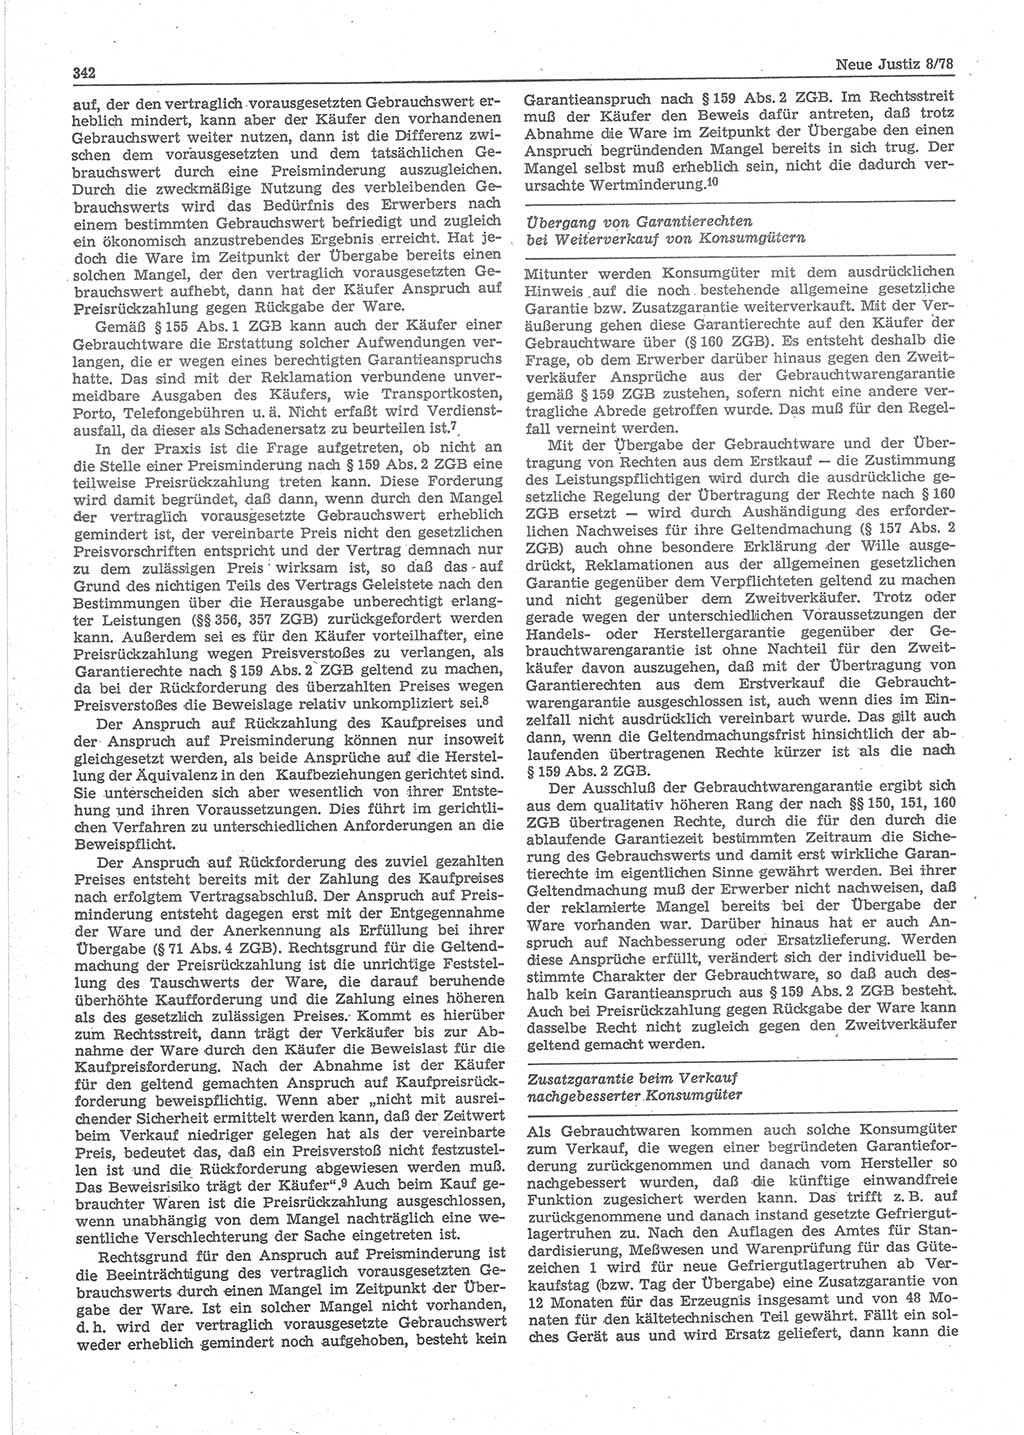 Neue Justiz (NJ), Zeitschrift für sozialistisches Recht und Gesetzlichkeit [Deutsche Demokratische Republik (DDR)], 32. Jahrgang 1978, Seite 342 (NJ DDR 1978, S. 342)